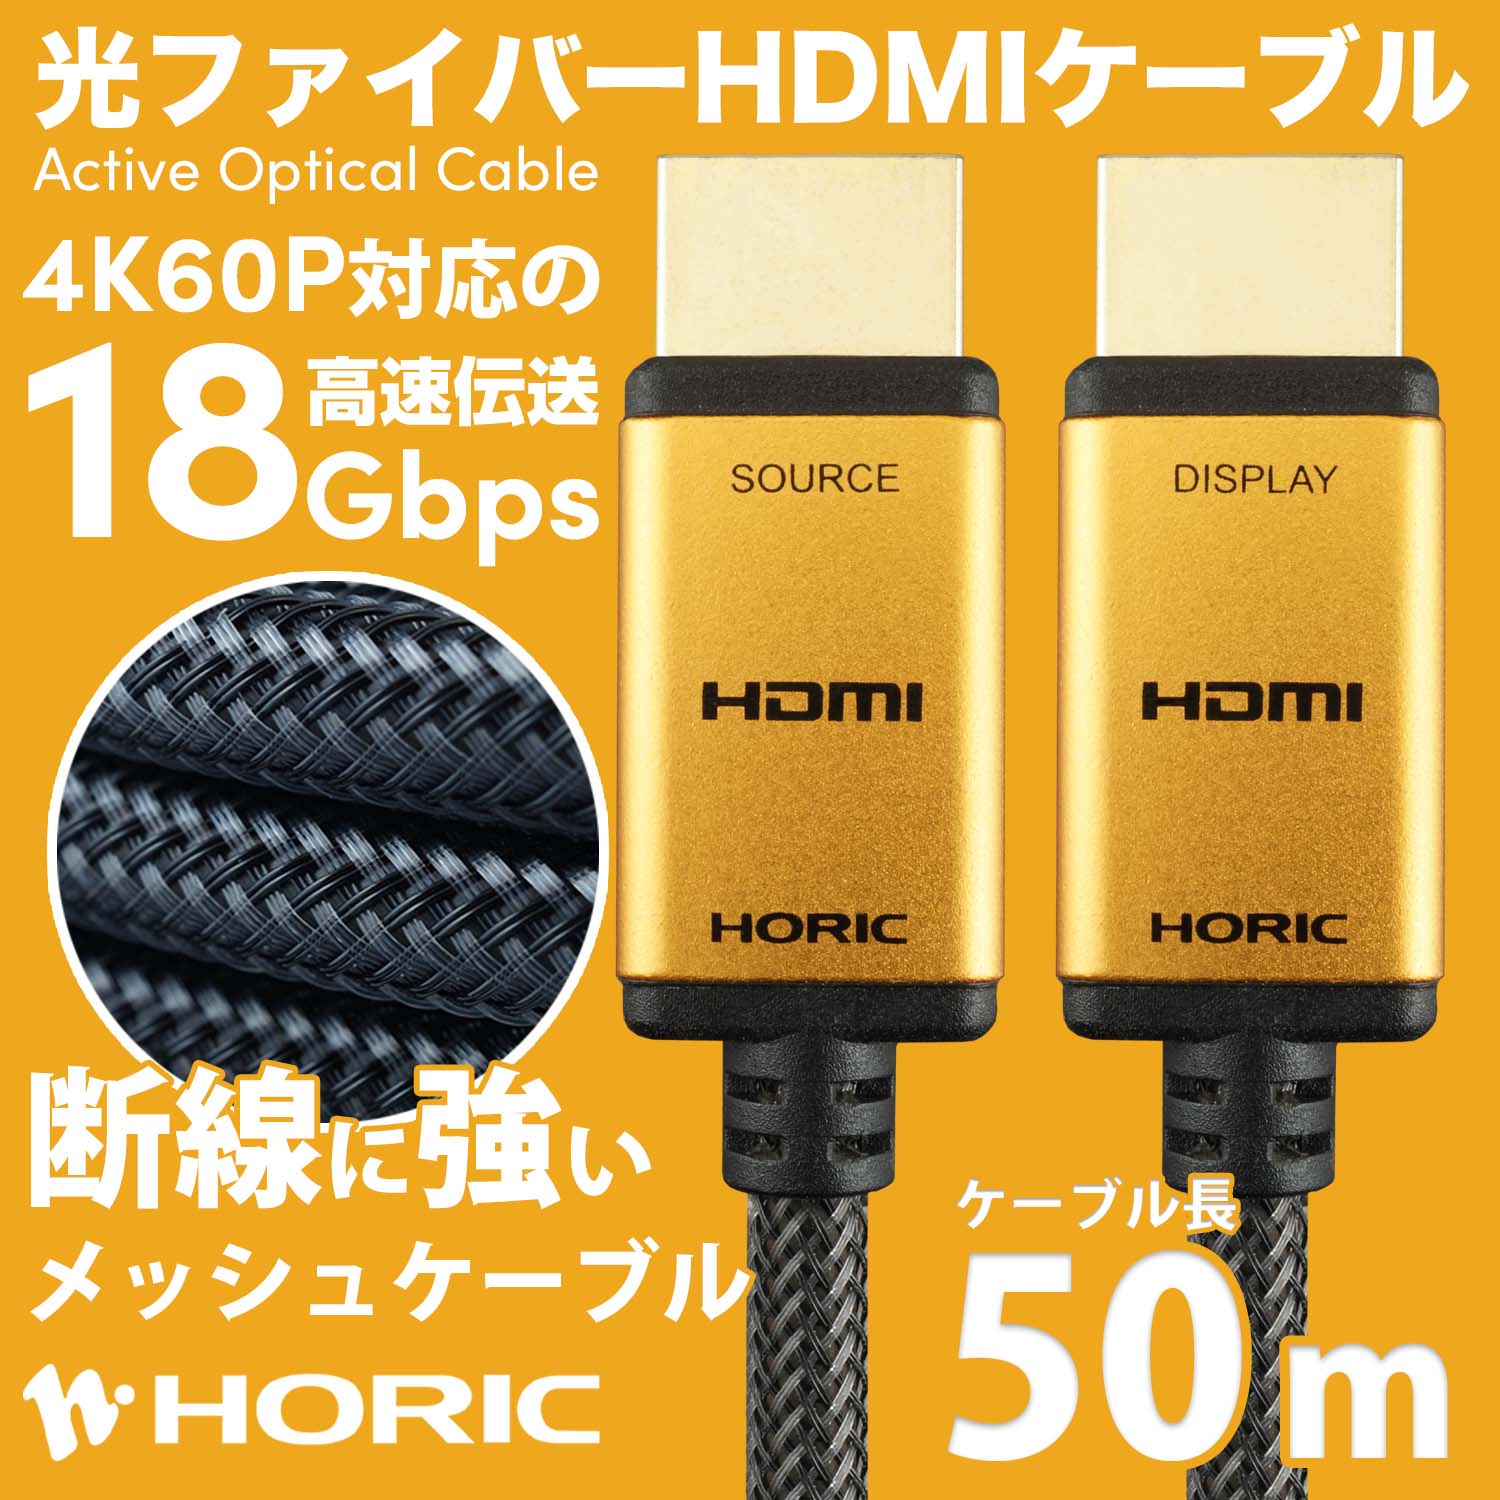 光ファイバー HDMIケーブル DTECH - ケーブル